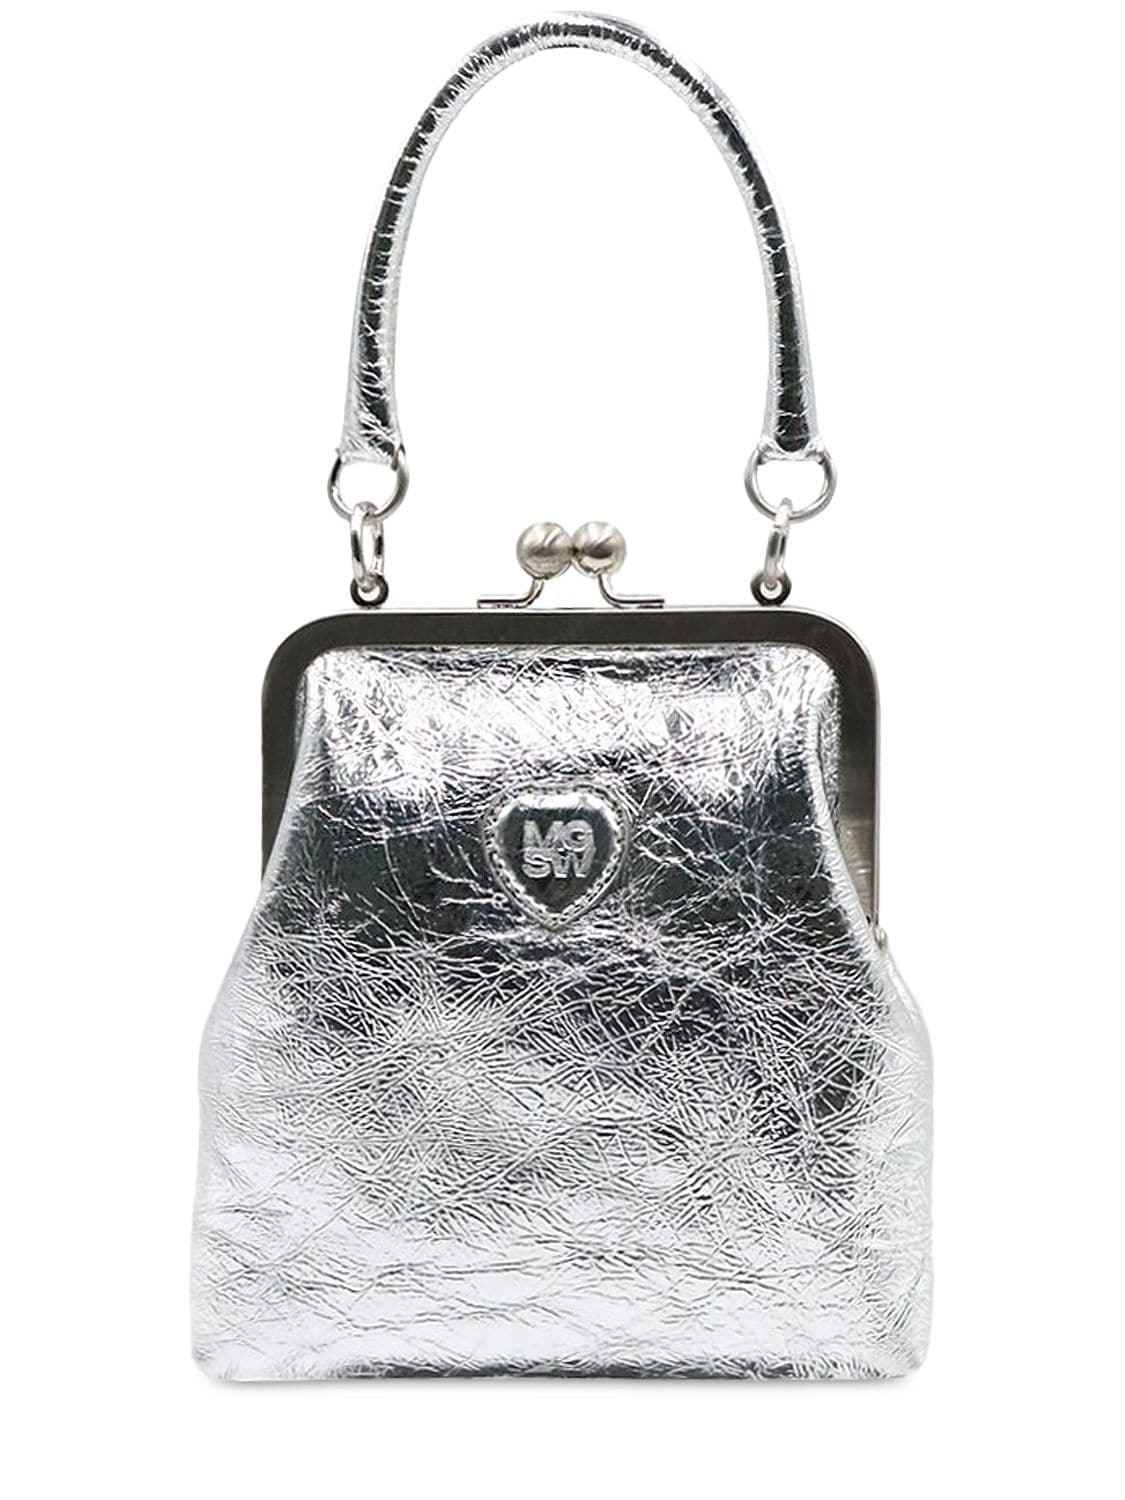 Marge Sherwood Bolita Frame Crinkled Leather Bag Silver